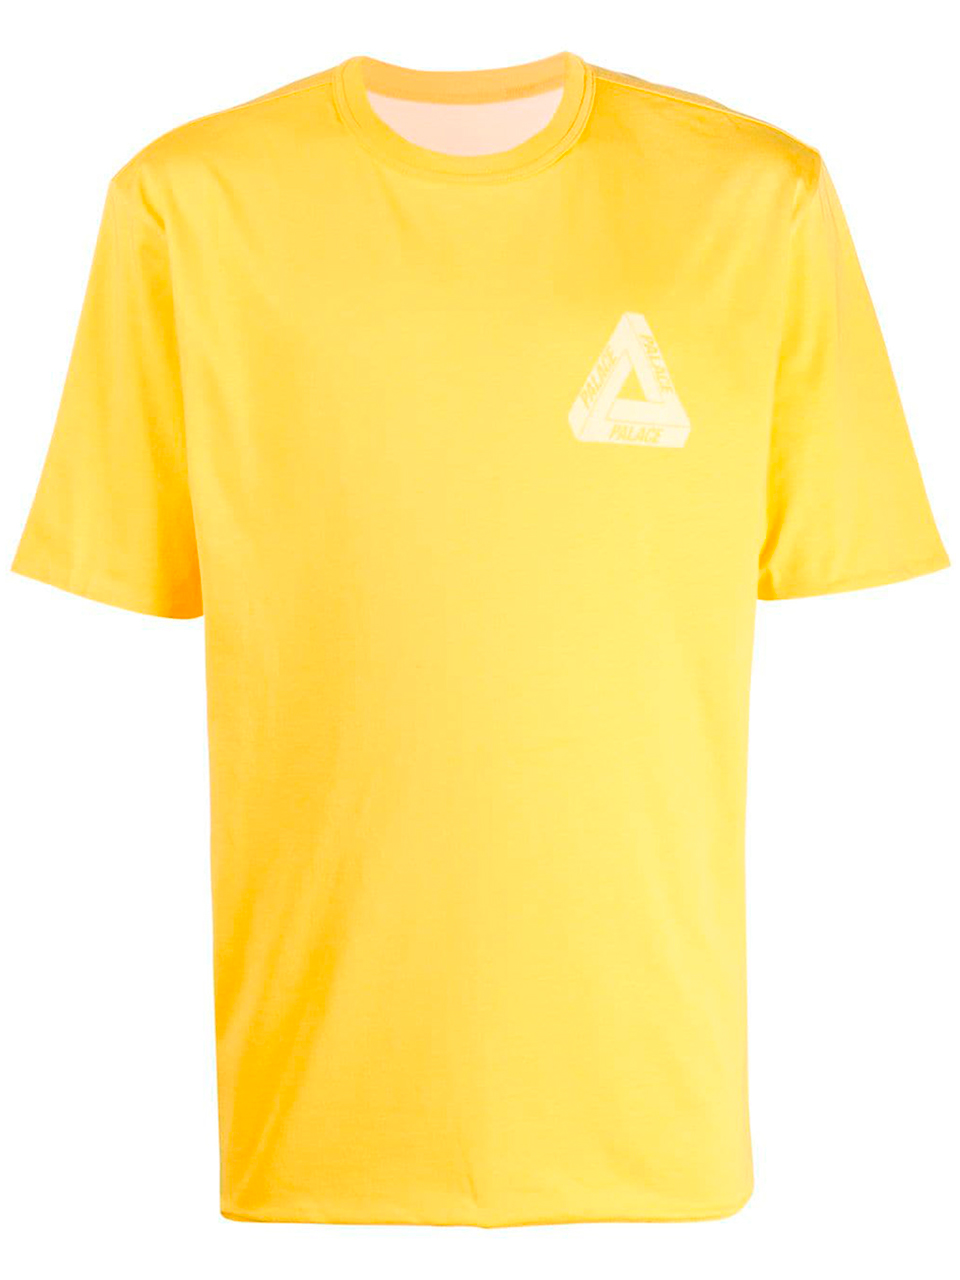 Imagem de: Camiseta Palace Amarela com Logo